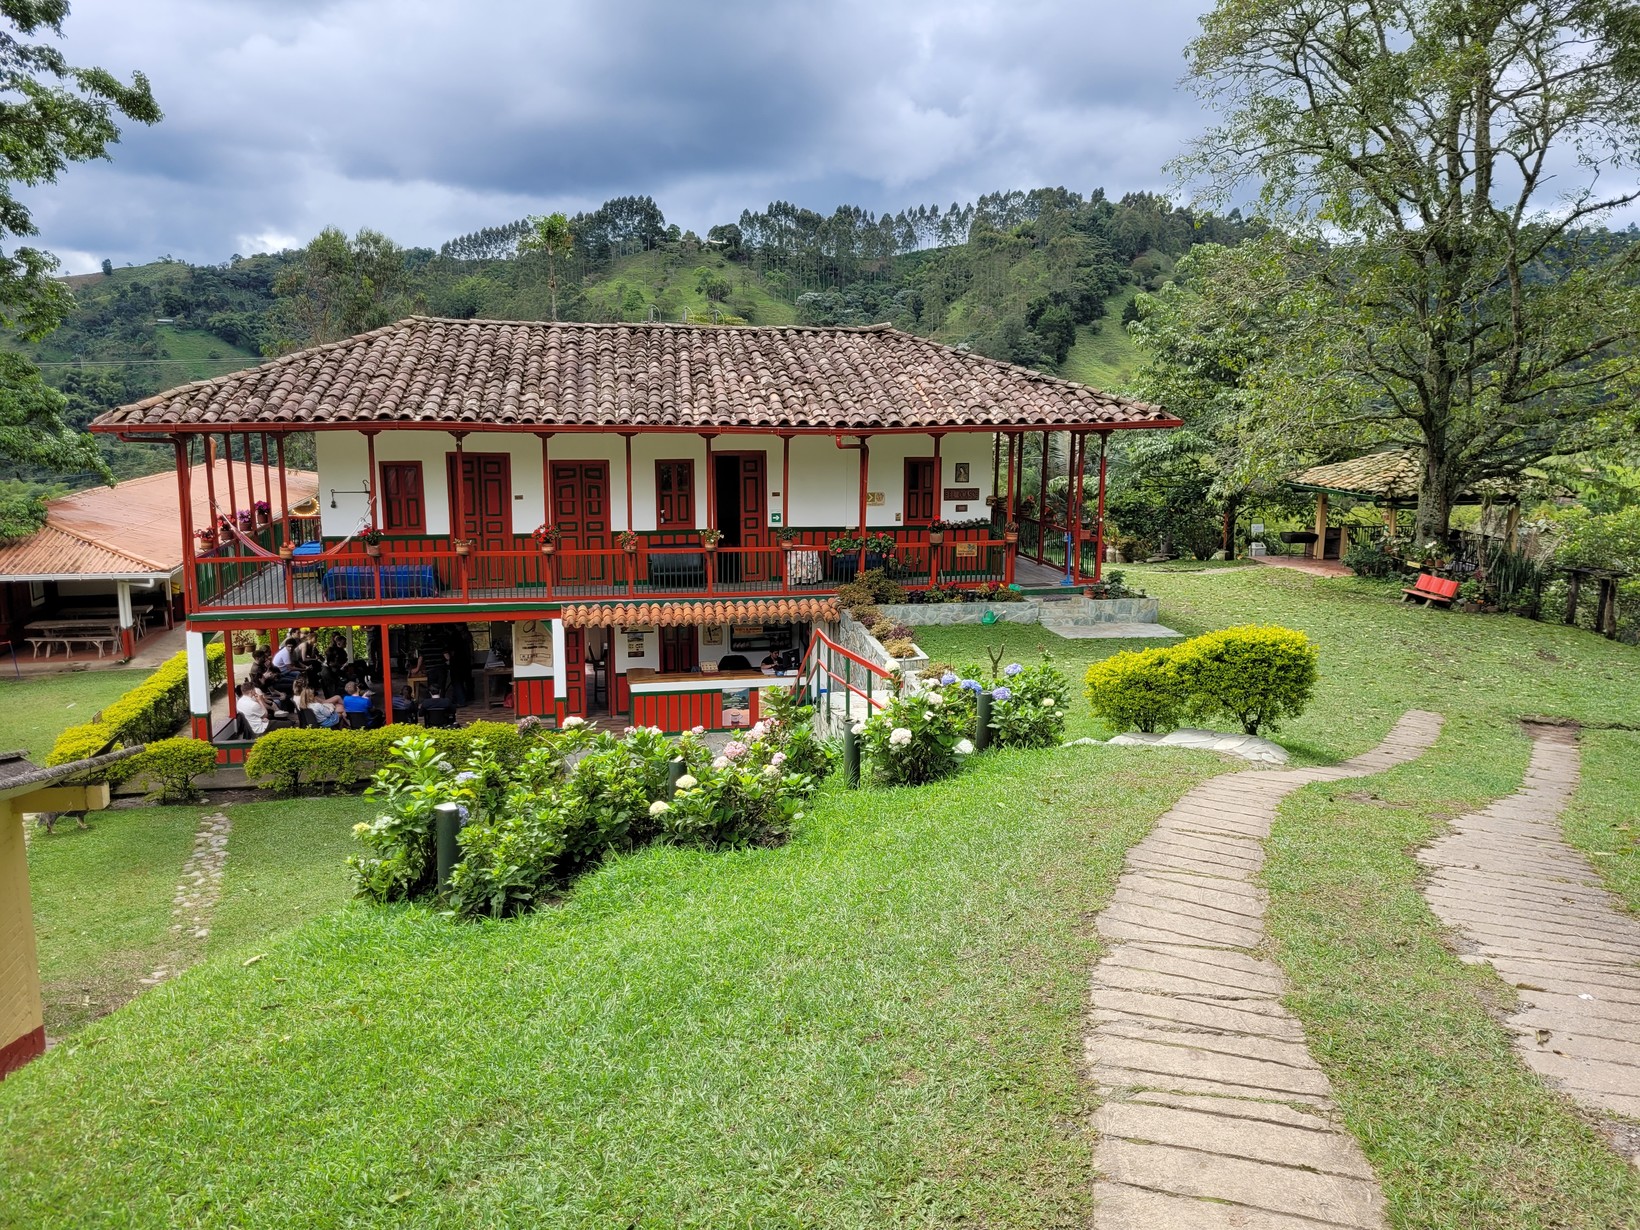 Colombian Coffee Culture region